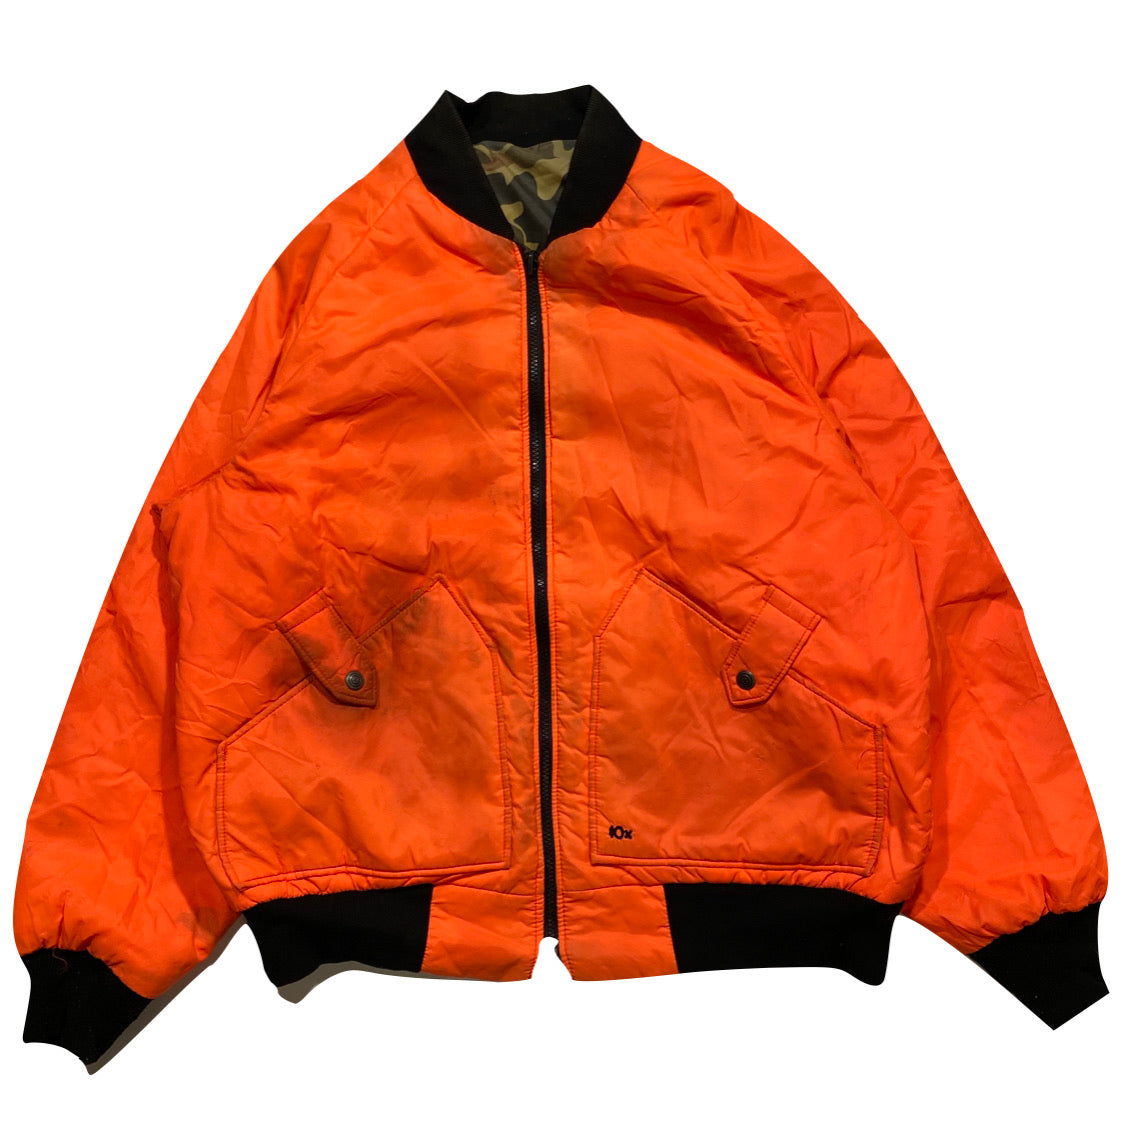 80s 10x Reversible Bomber jacket. XL